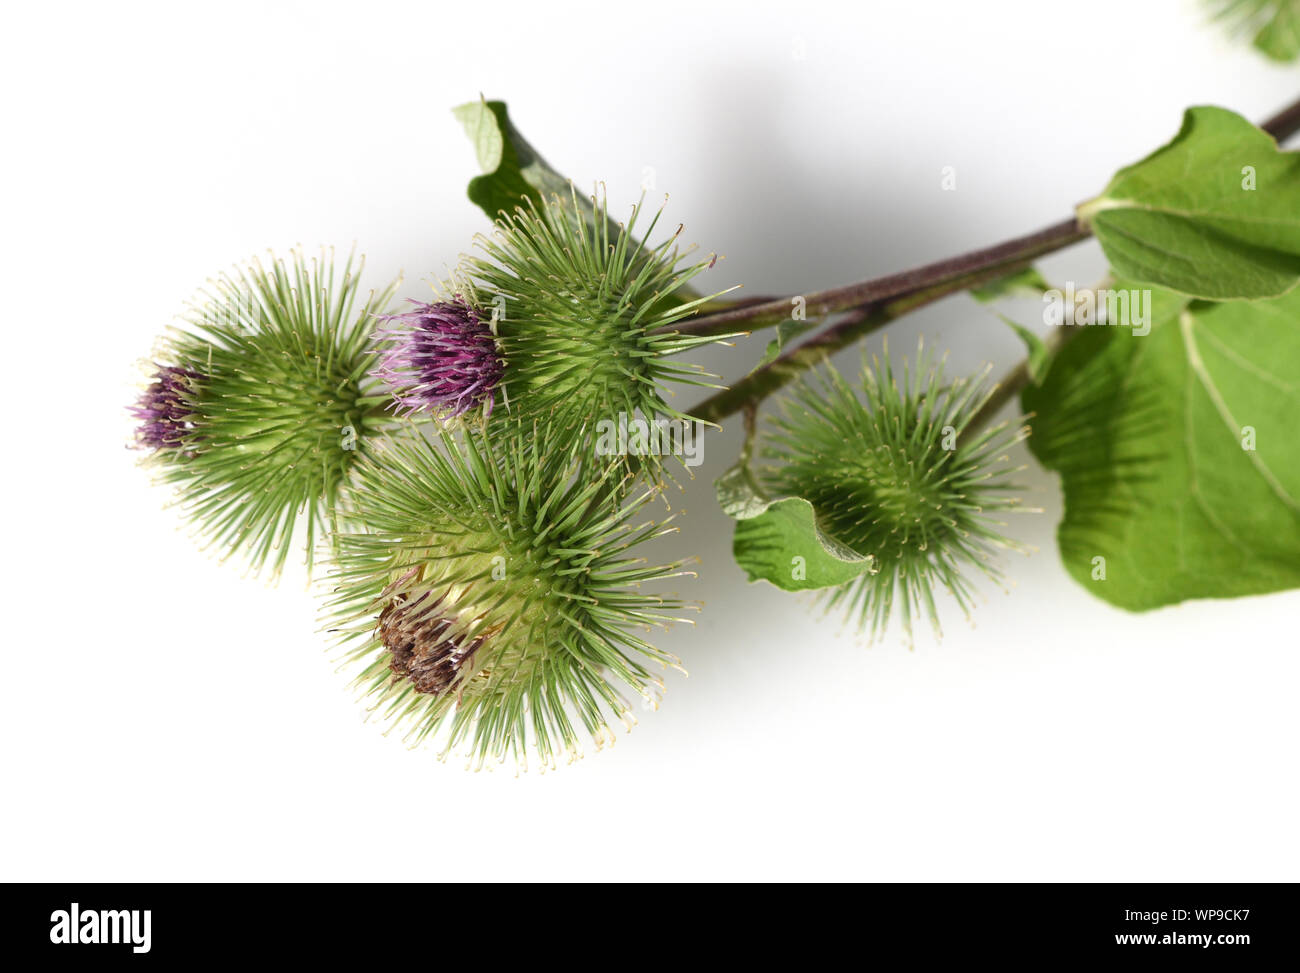 Große Klette arctium Lappa,,, ist eine wichtige Heilpflanze mit lila Blueten und wird in der Medizin verwendet. Große Klette arctium Lappa,, ist eine im Stockfoto